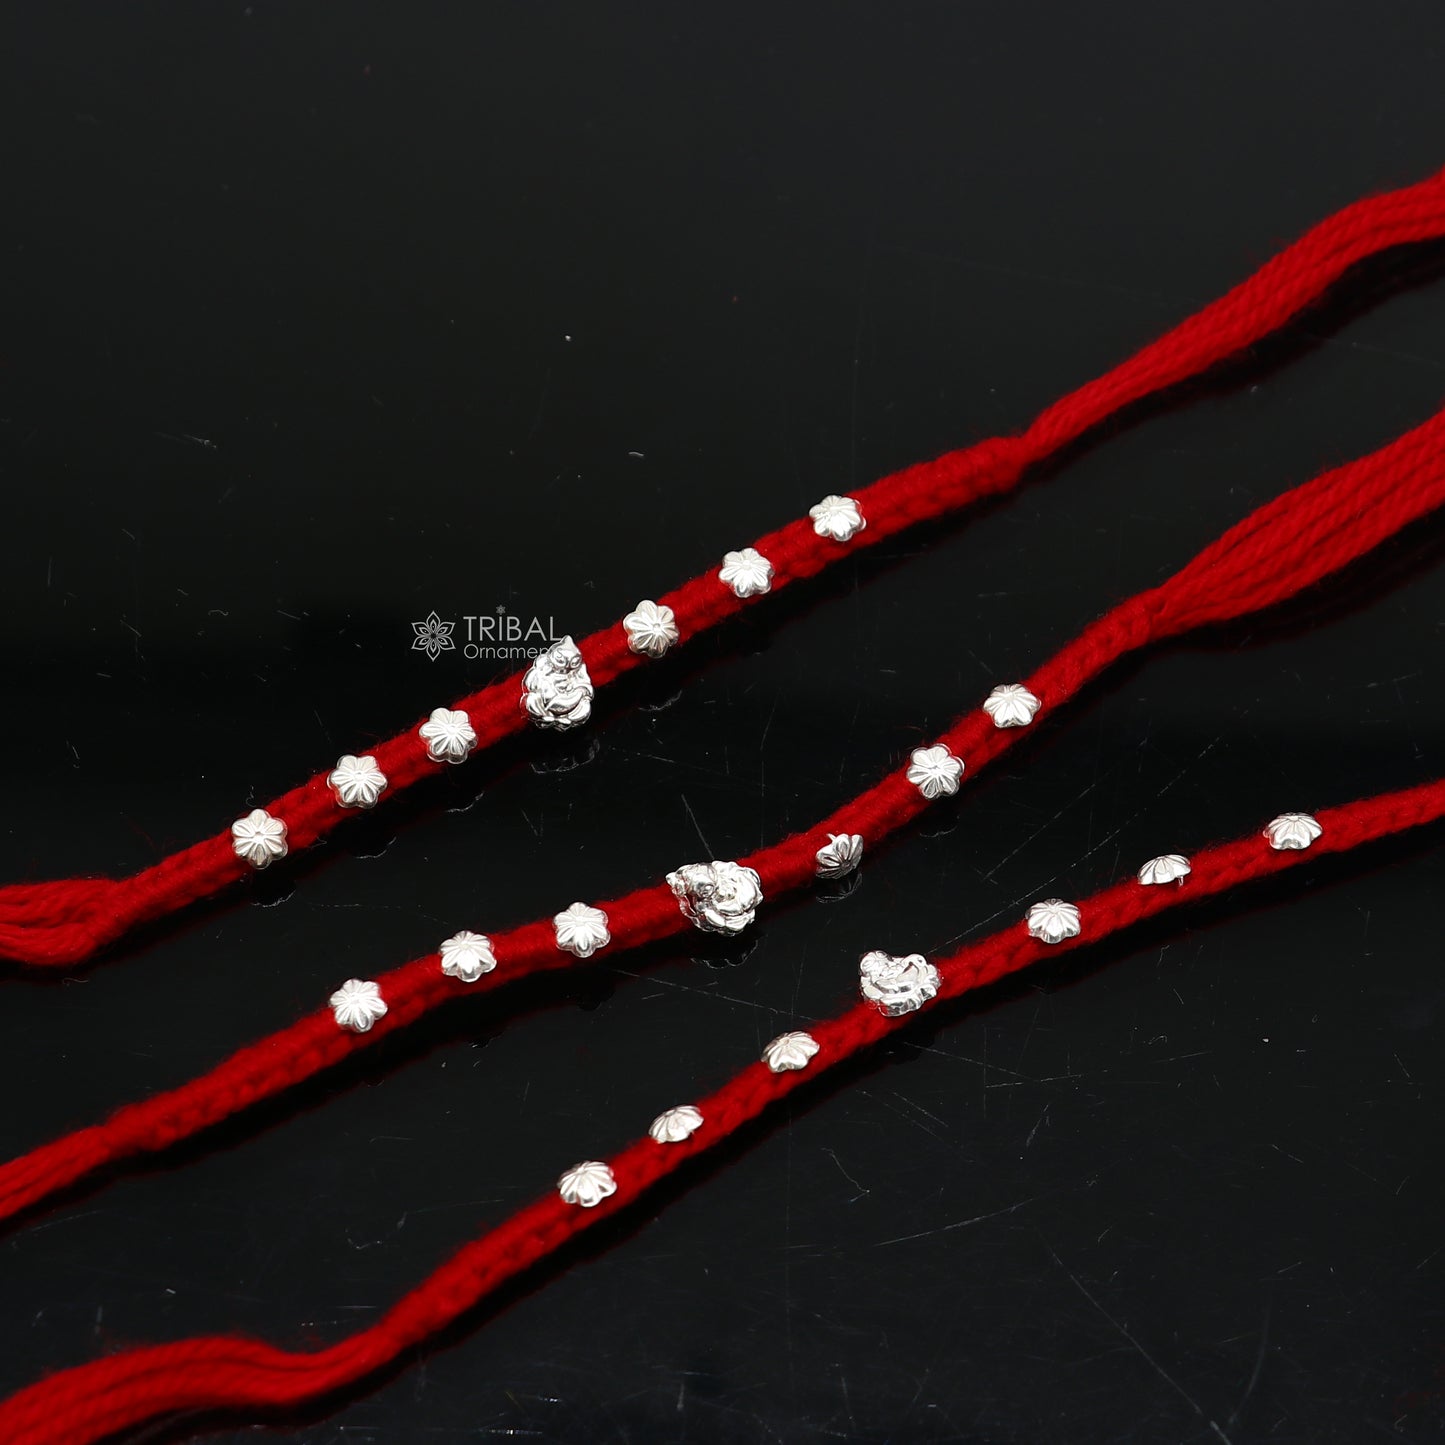 Silver customized design Rakhi bracelet with stunning red thread Best sibling rakhi for Festival Rakshabandhan rk297 - TRIBAL ORNAMENTS